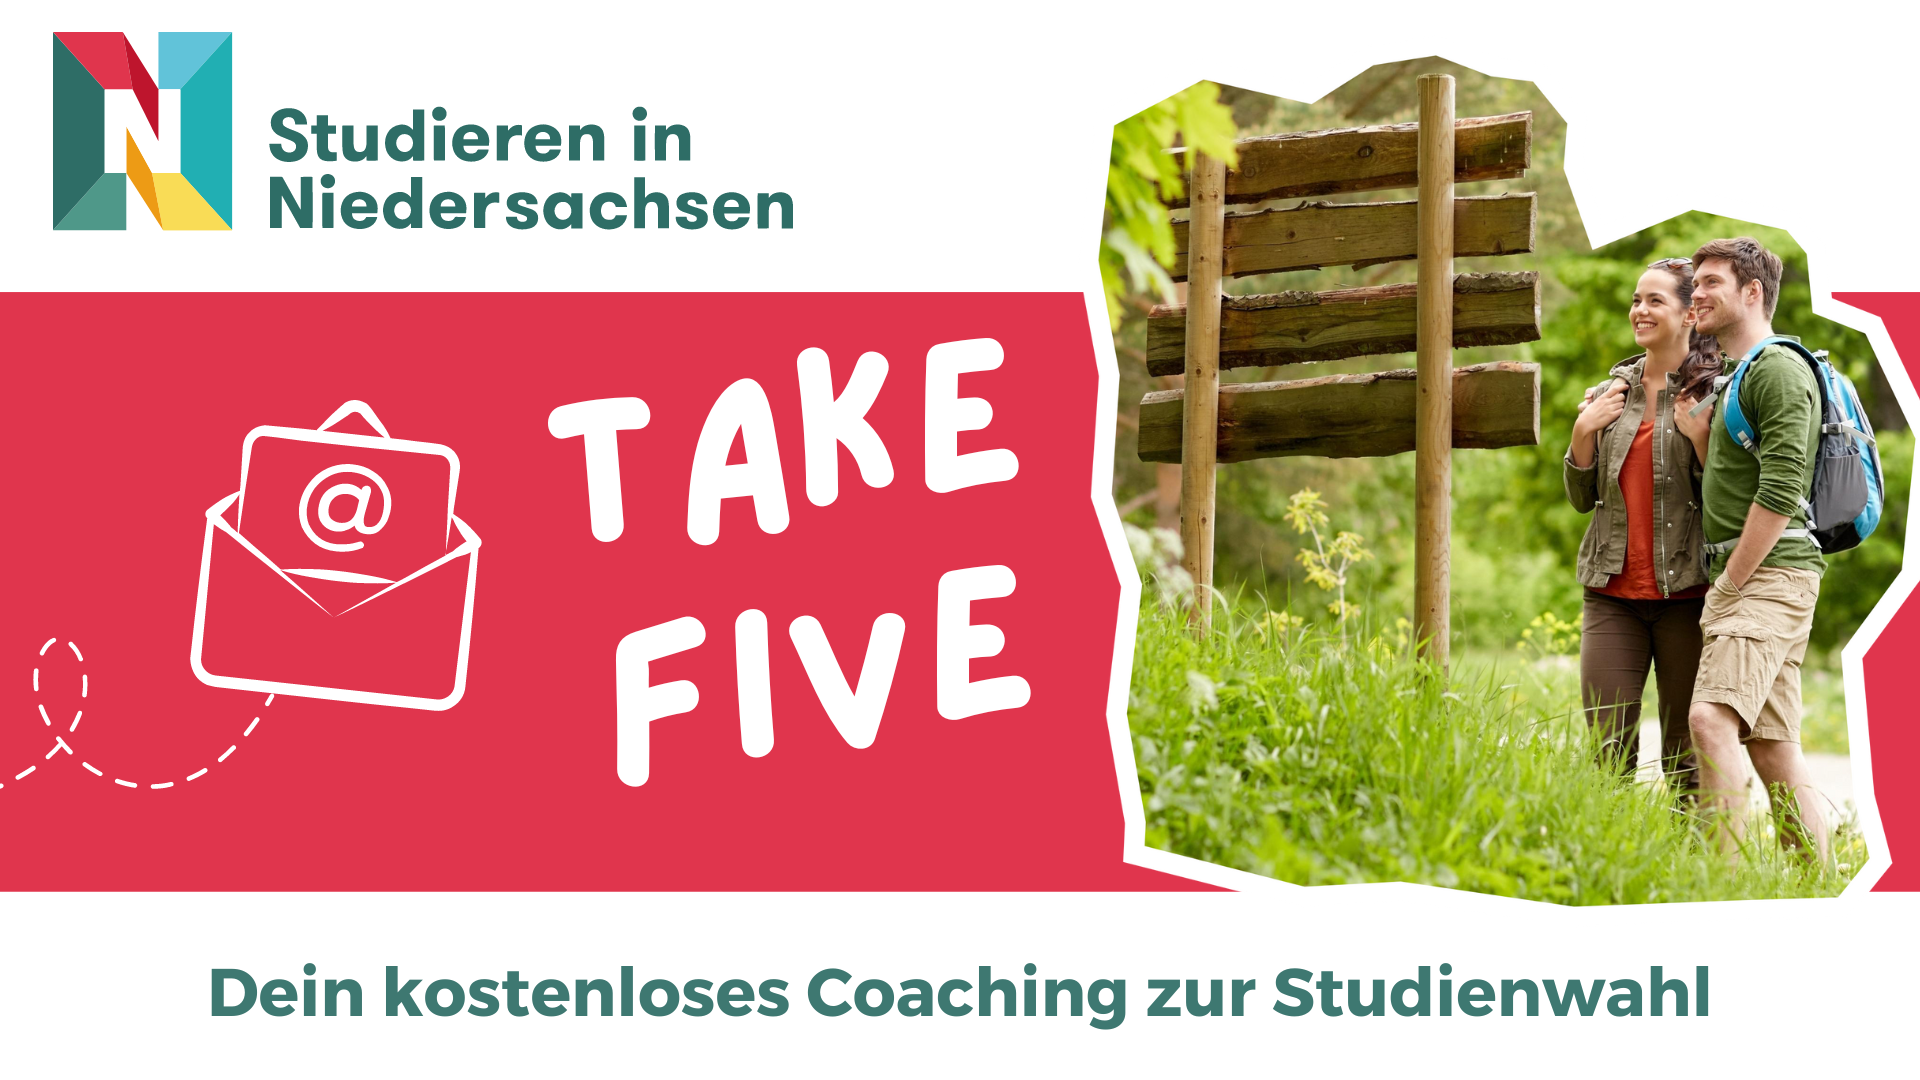 Studieren in Niedersachsen Take Five Werbung